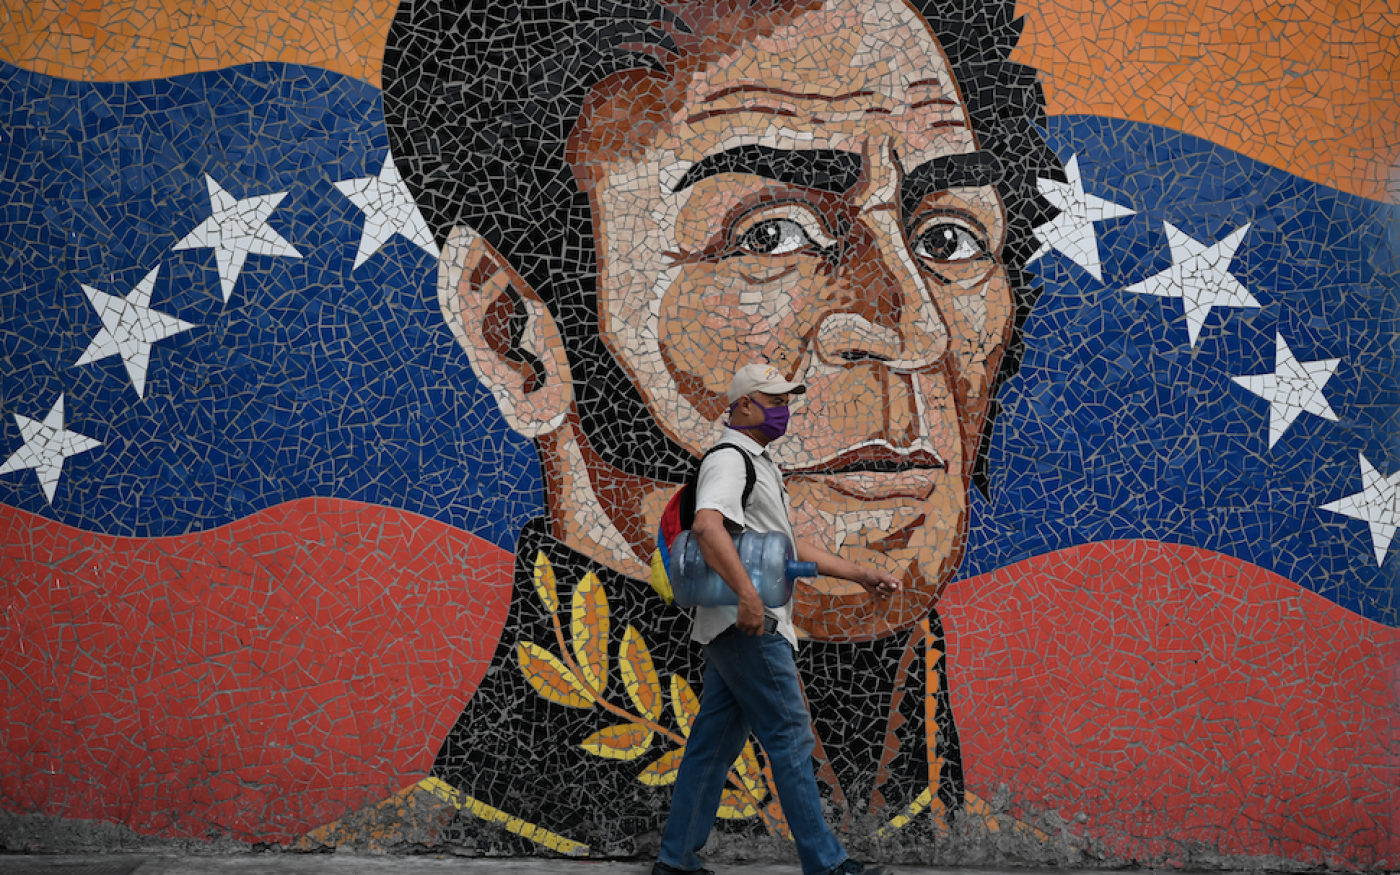 Un homme passe devant une peinture murale représentant le héros de l’indépendance sud-américaine Simon Bolivar, à Caracas, le 17 avril 2020 (AFP)